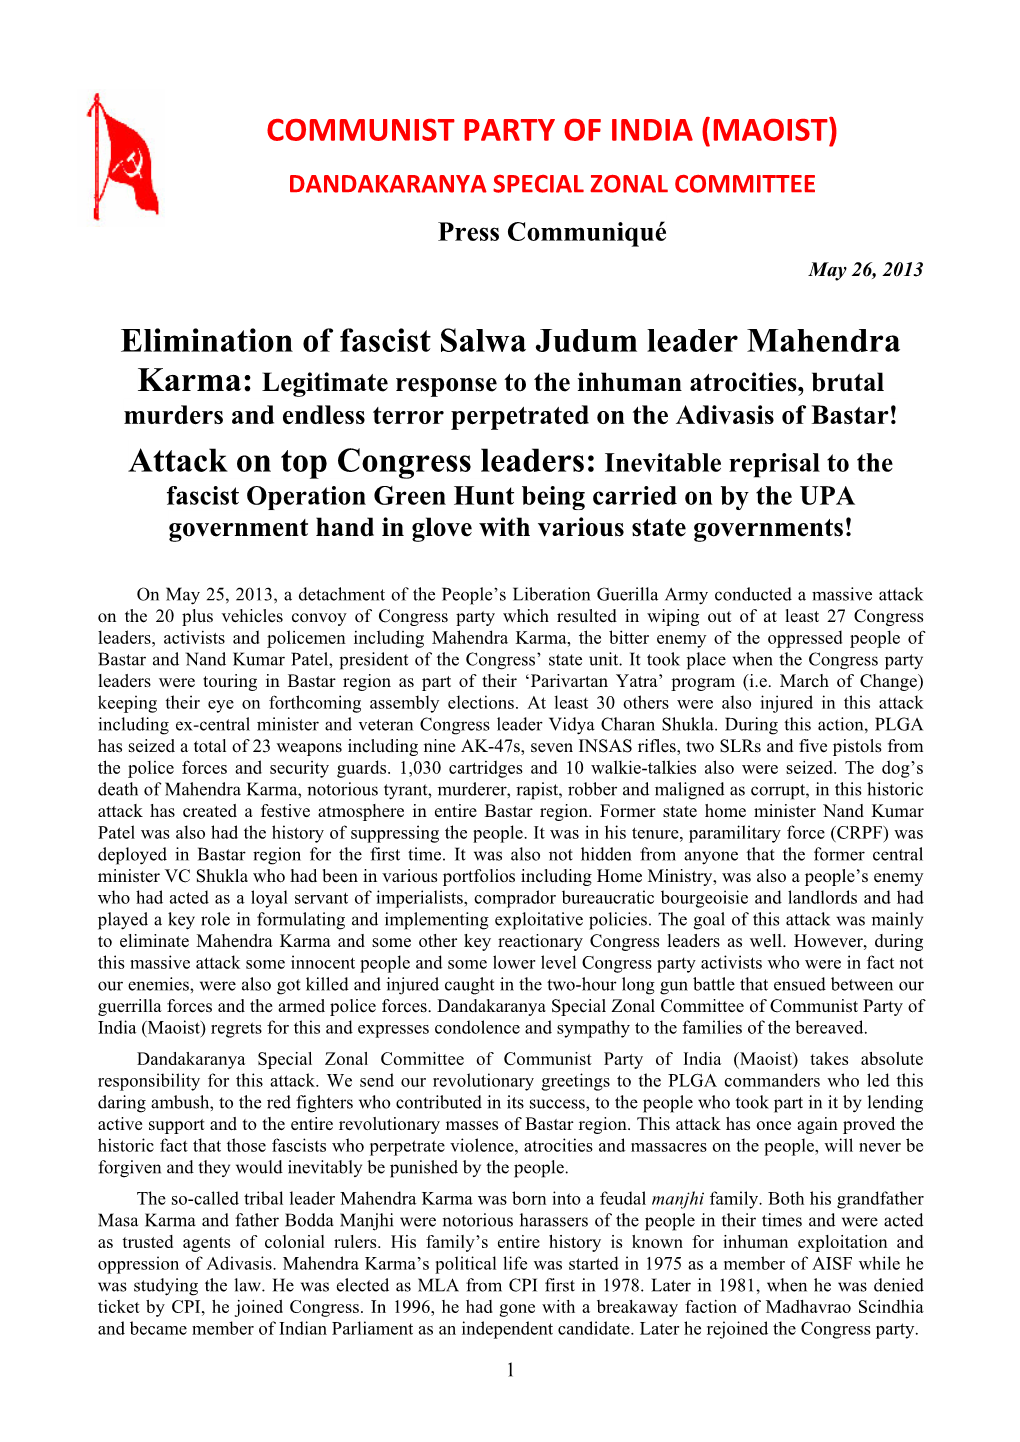 (MAOIST) Elimination of Fascist Salwa Judum Leader Mahendra Attack On